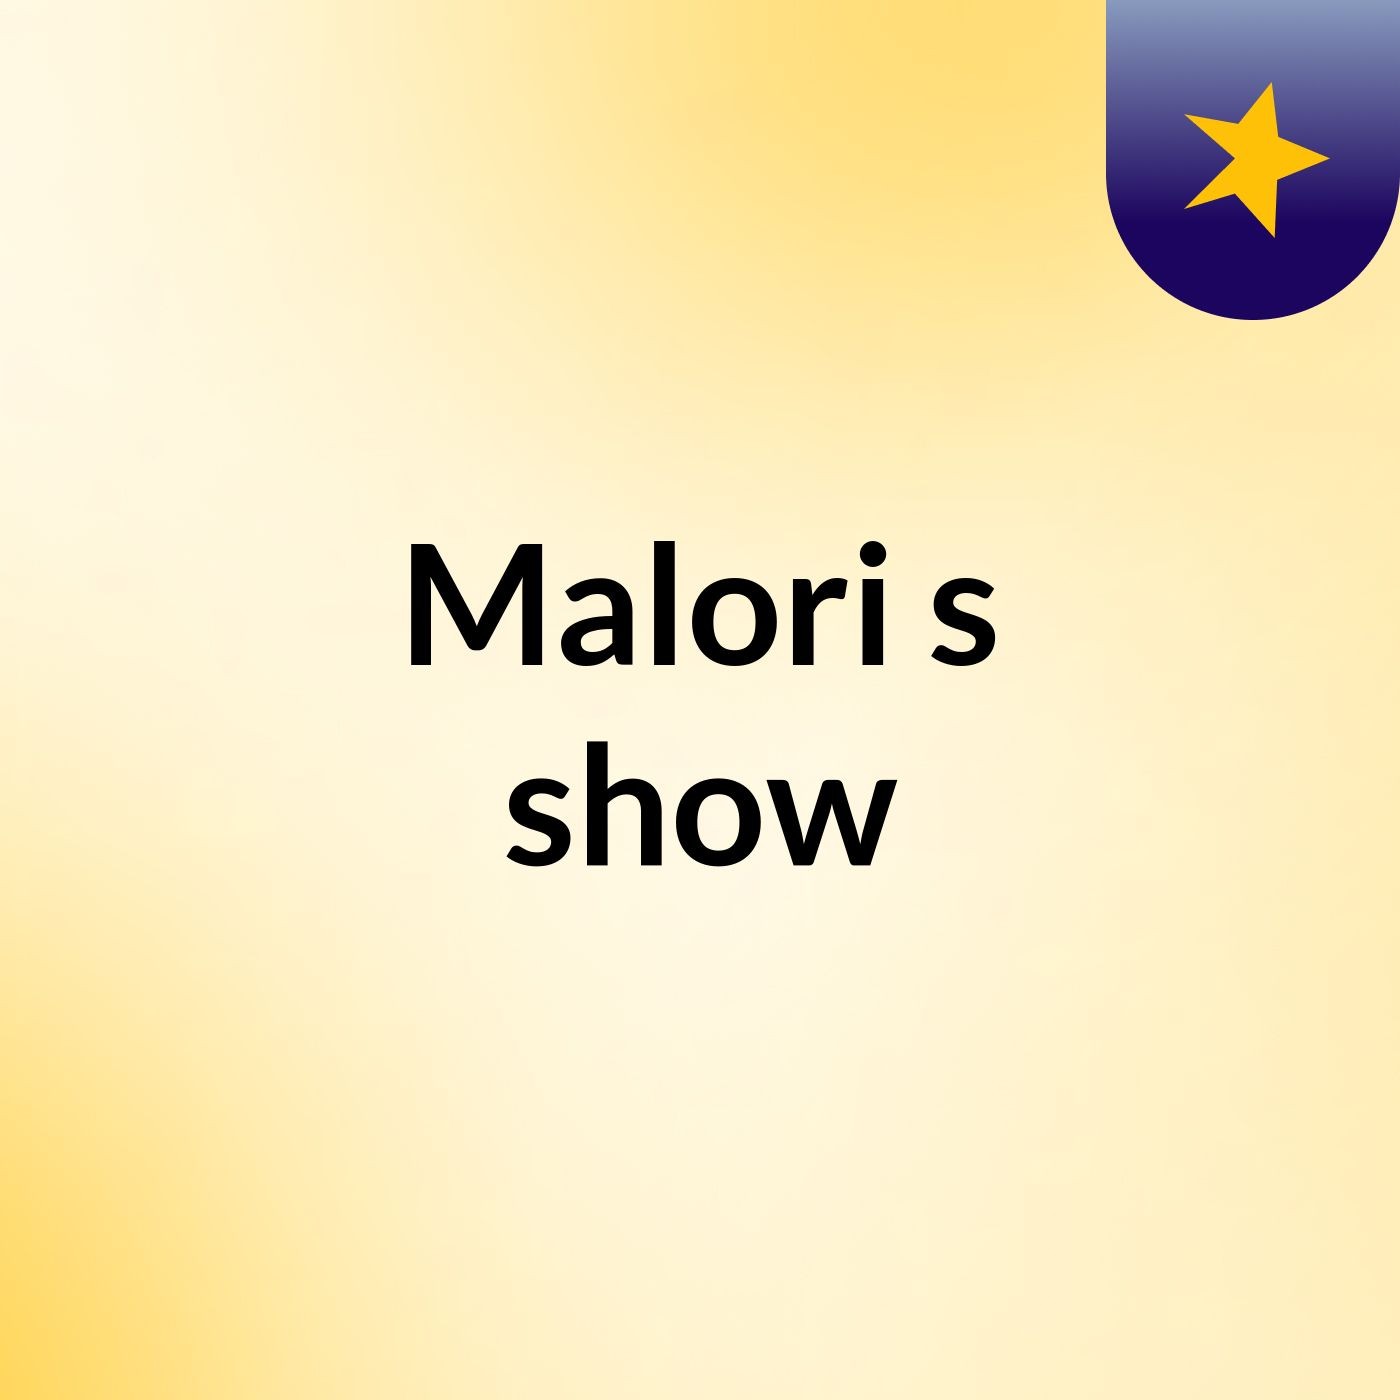 Malori's show